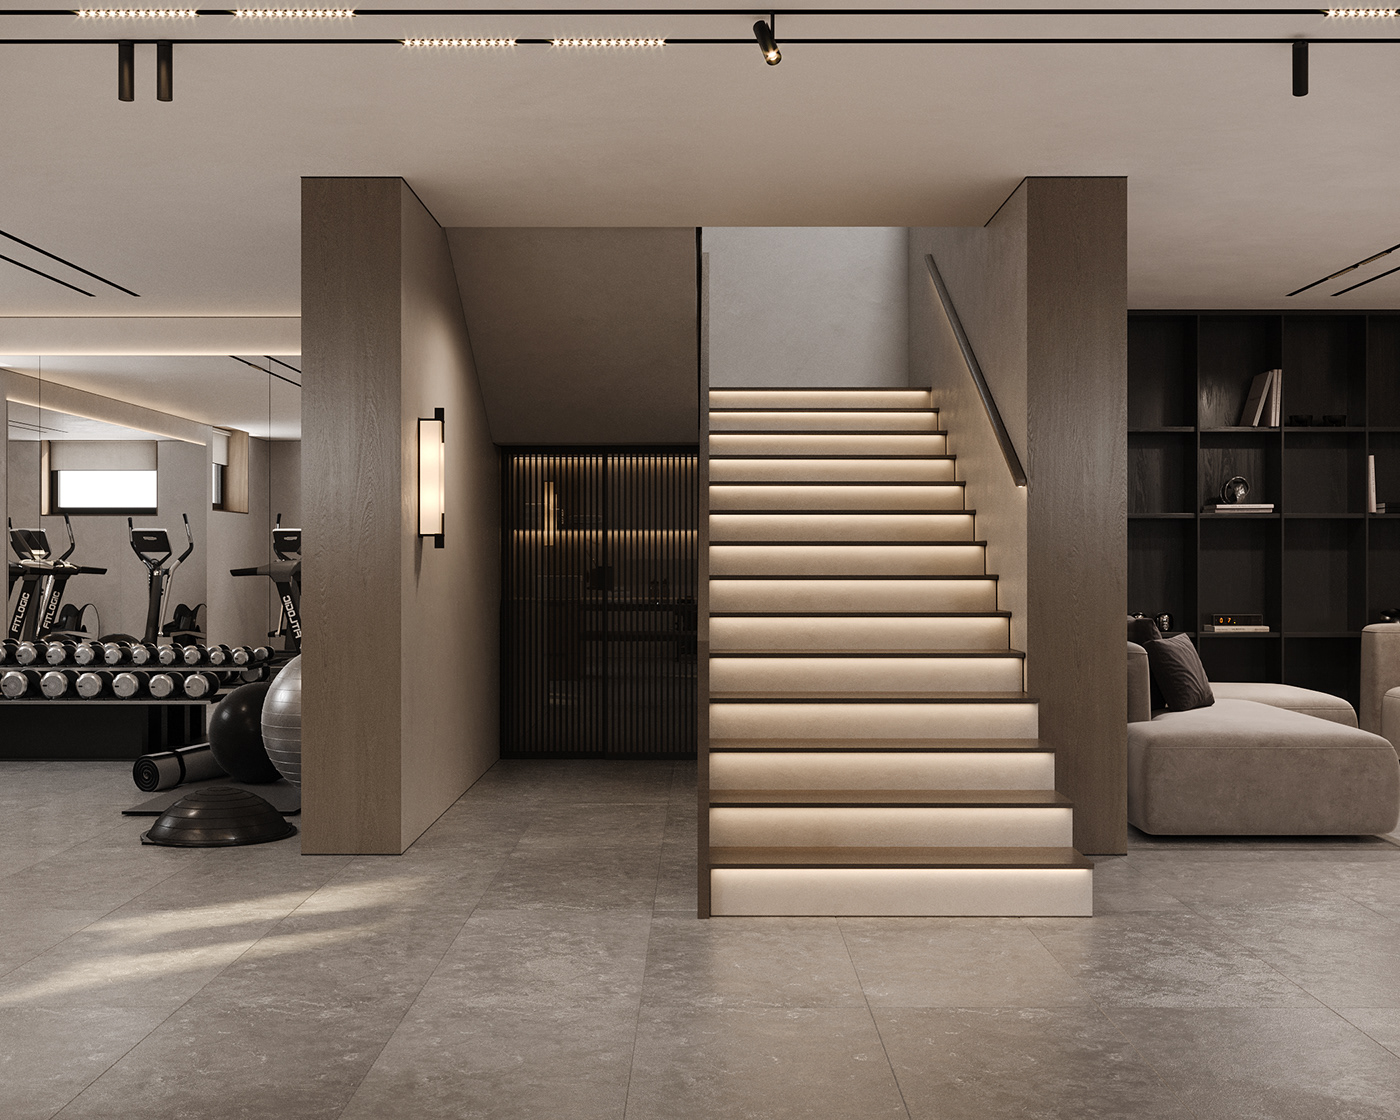 Render architecture visualization interior design  archviz modern gym sport living room design